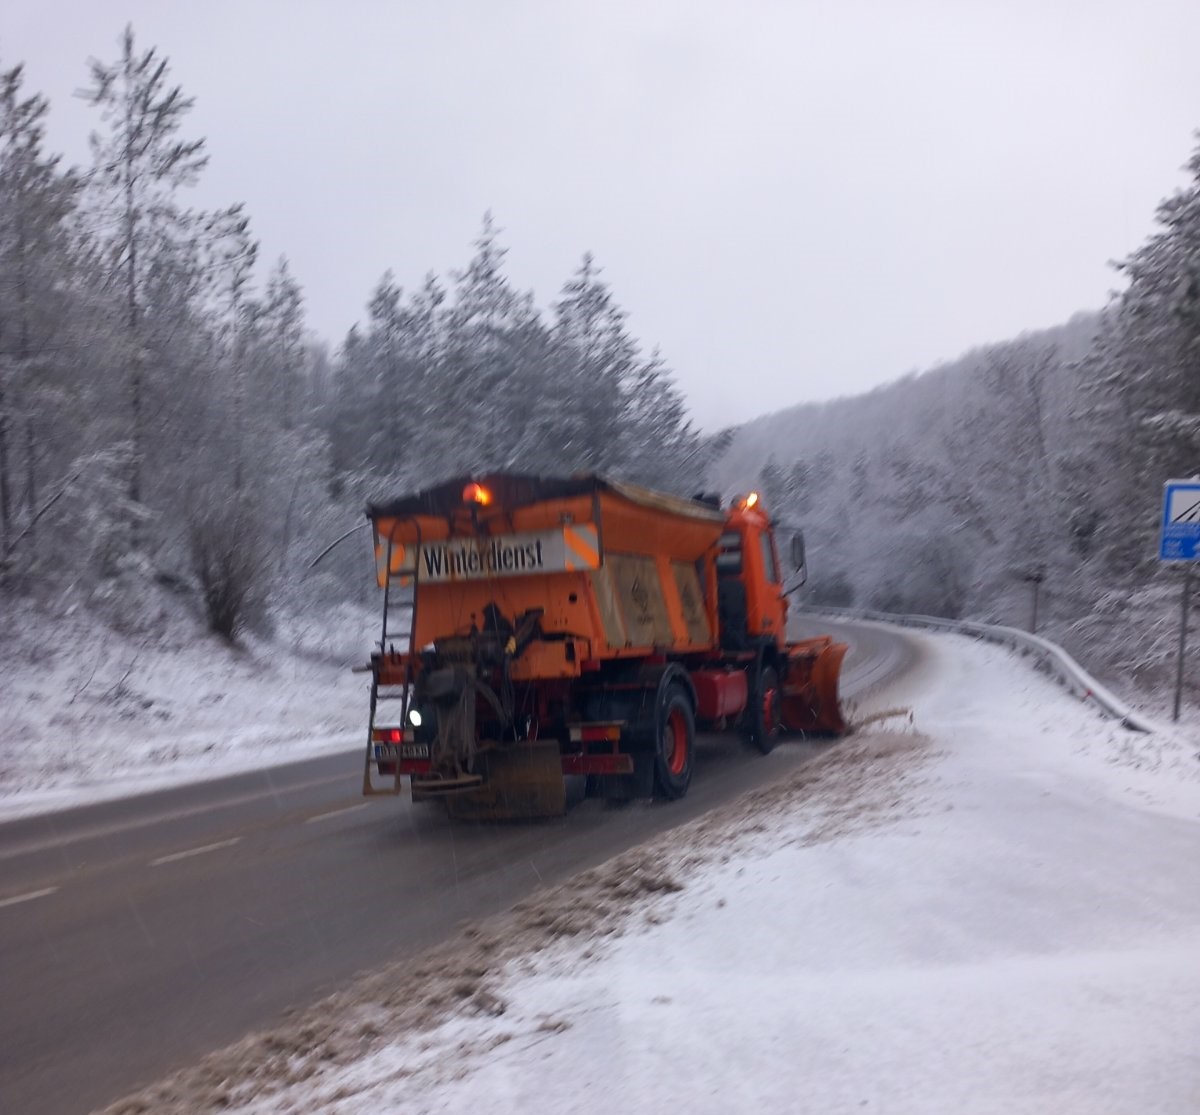 337 снегопочистващи машини  обработват пътищата от републиканската пътна мрежа. В